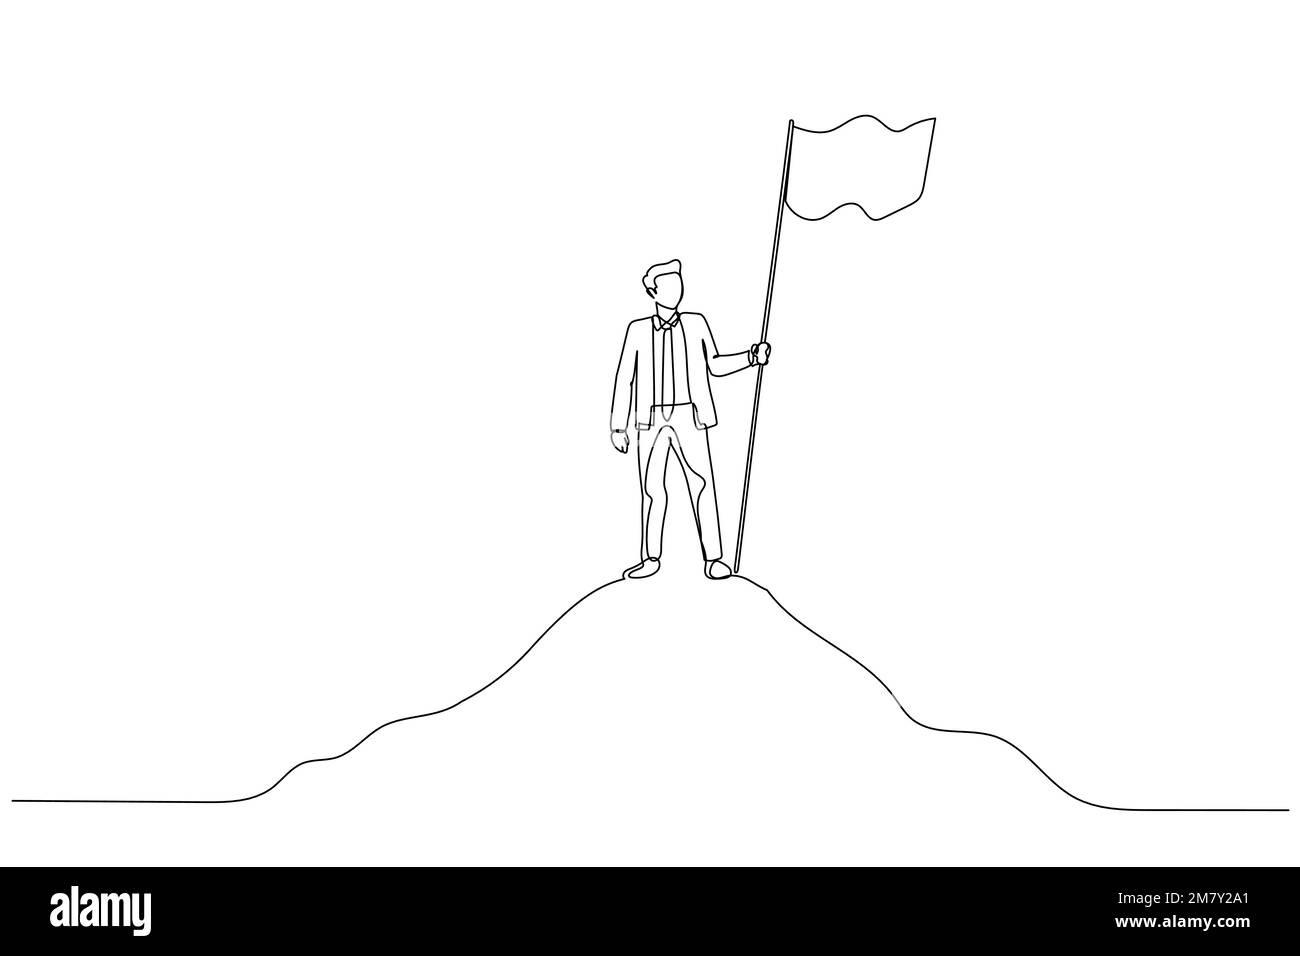 Darstellung eines Geschäftsmanns mit Flagge auf dem Gipfel des Berges über dem Himmel Konzept des Geschäftserfolgs. Einteiliges Design mit durchgehender Strichzeichnung Stock Vektor